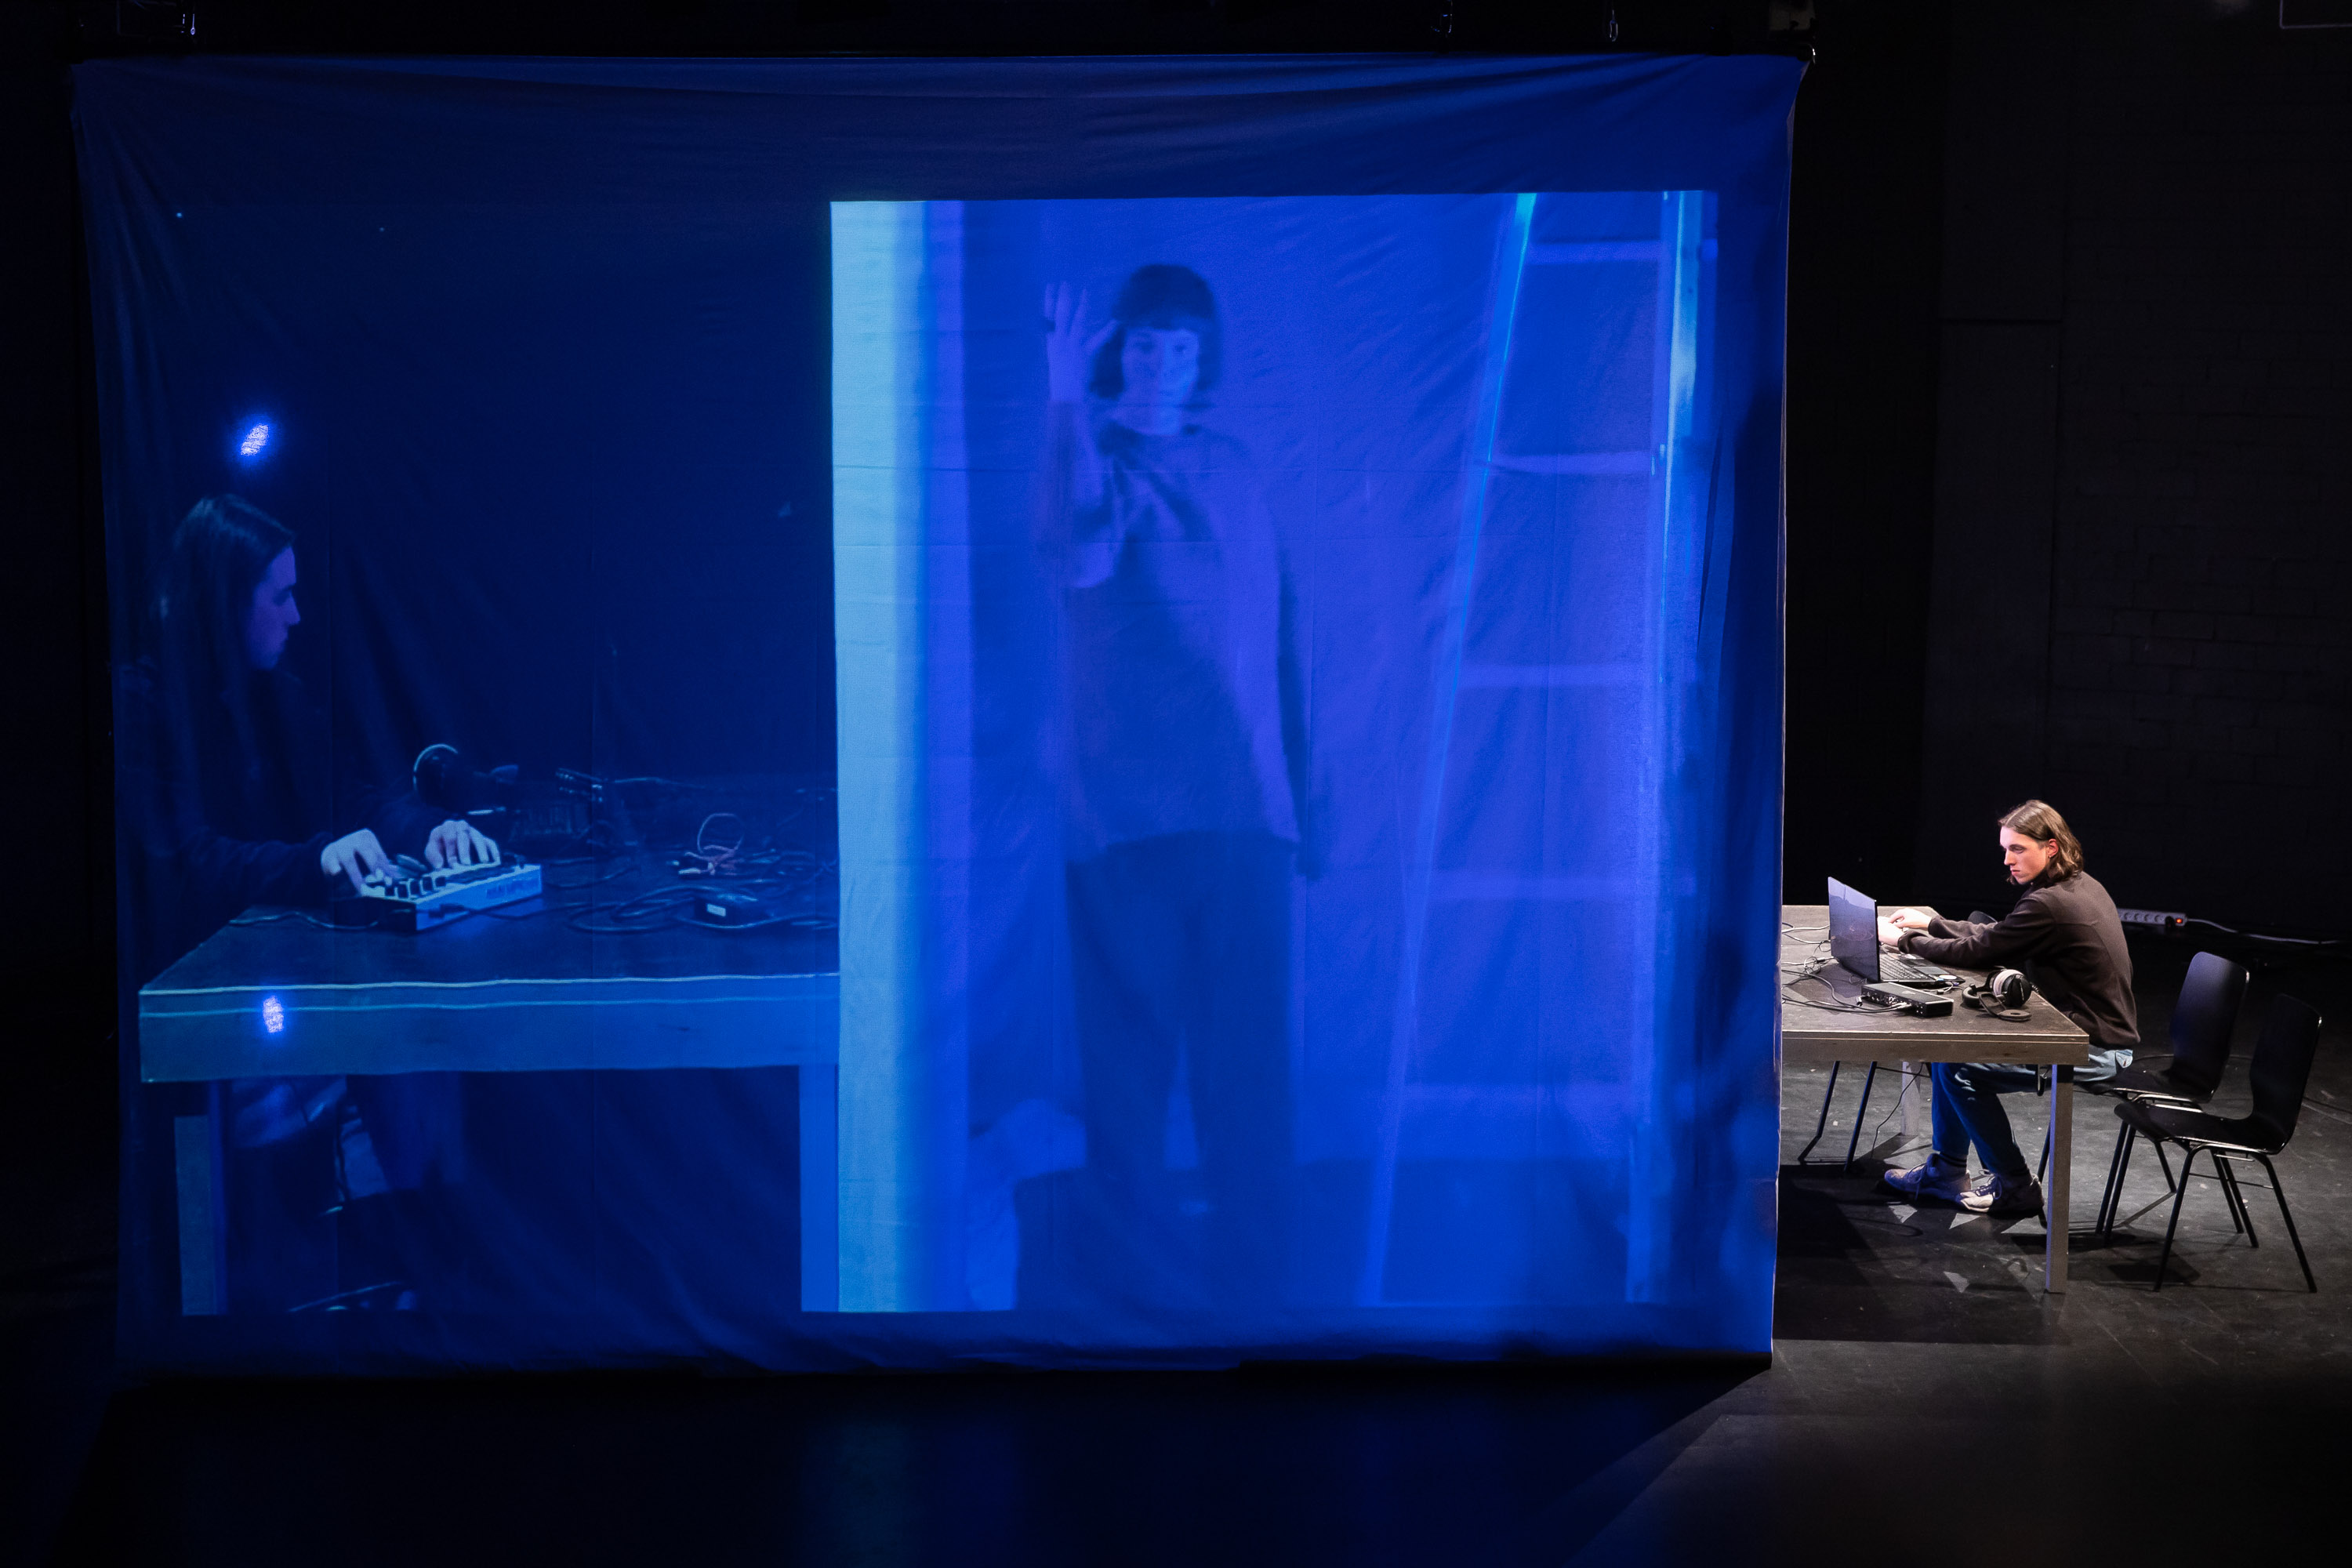 Impressionen von der Produktion "Anfangsatmo" der Gruppe II-5-1, ein Stück in einem digitalen Theaterformat